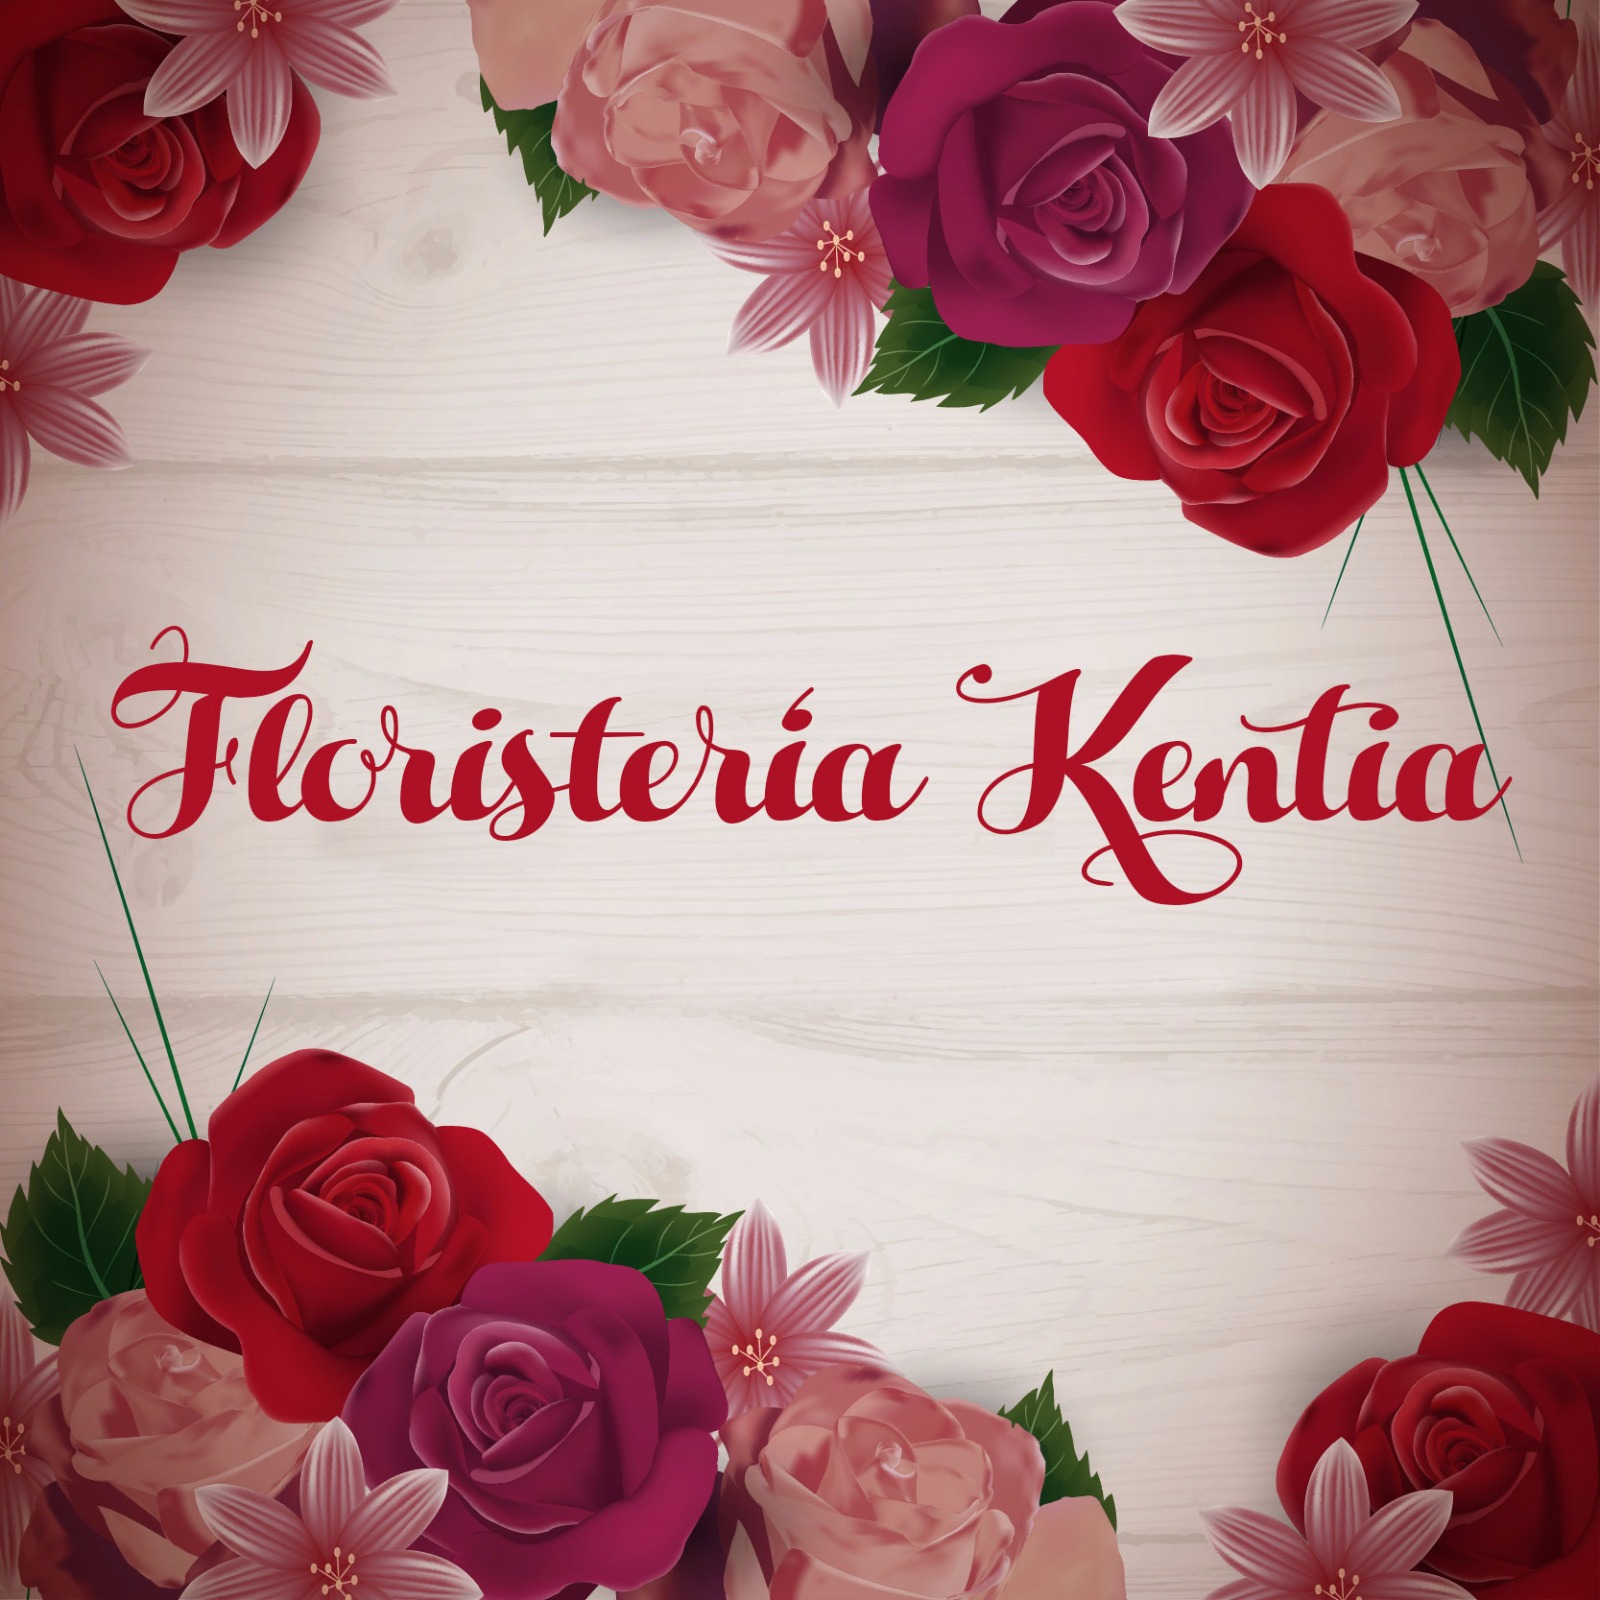 Floristería Kentia Logo